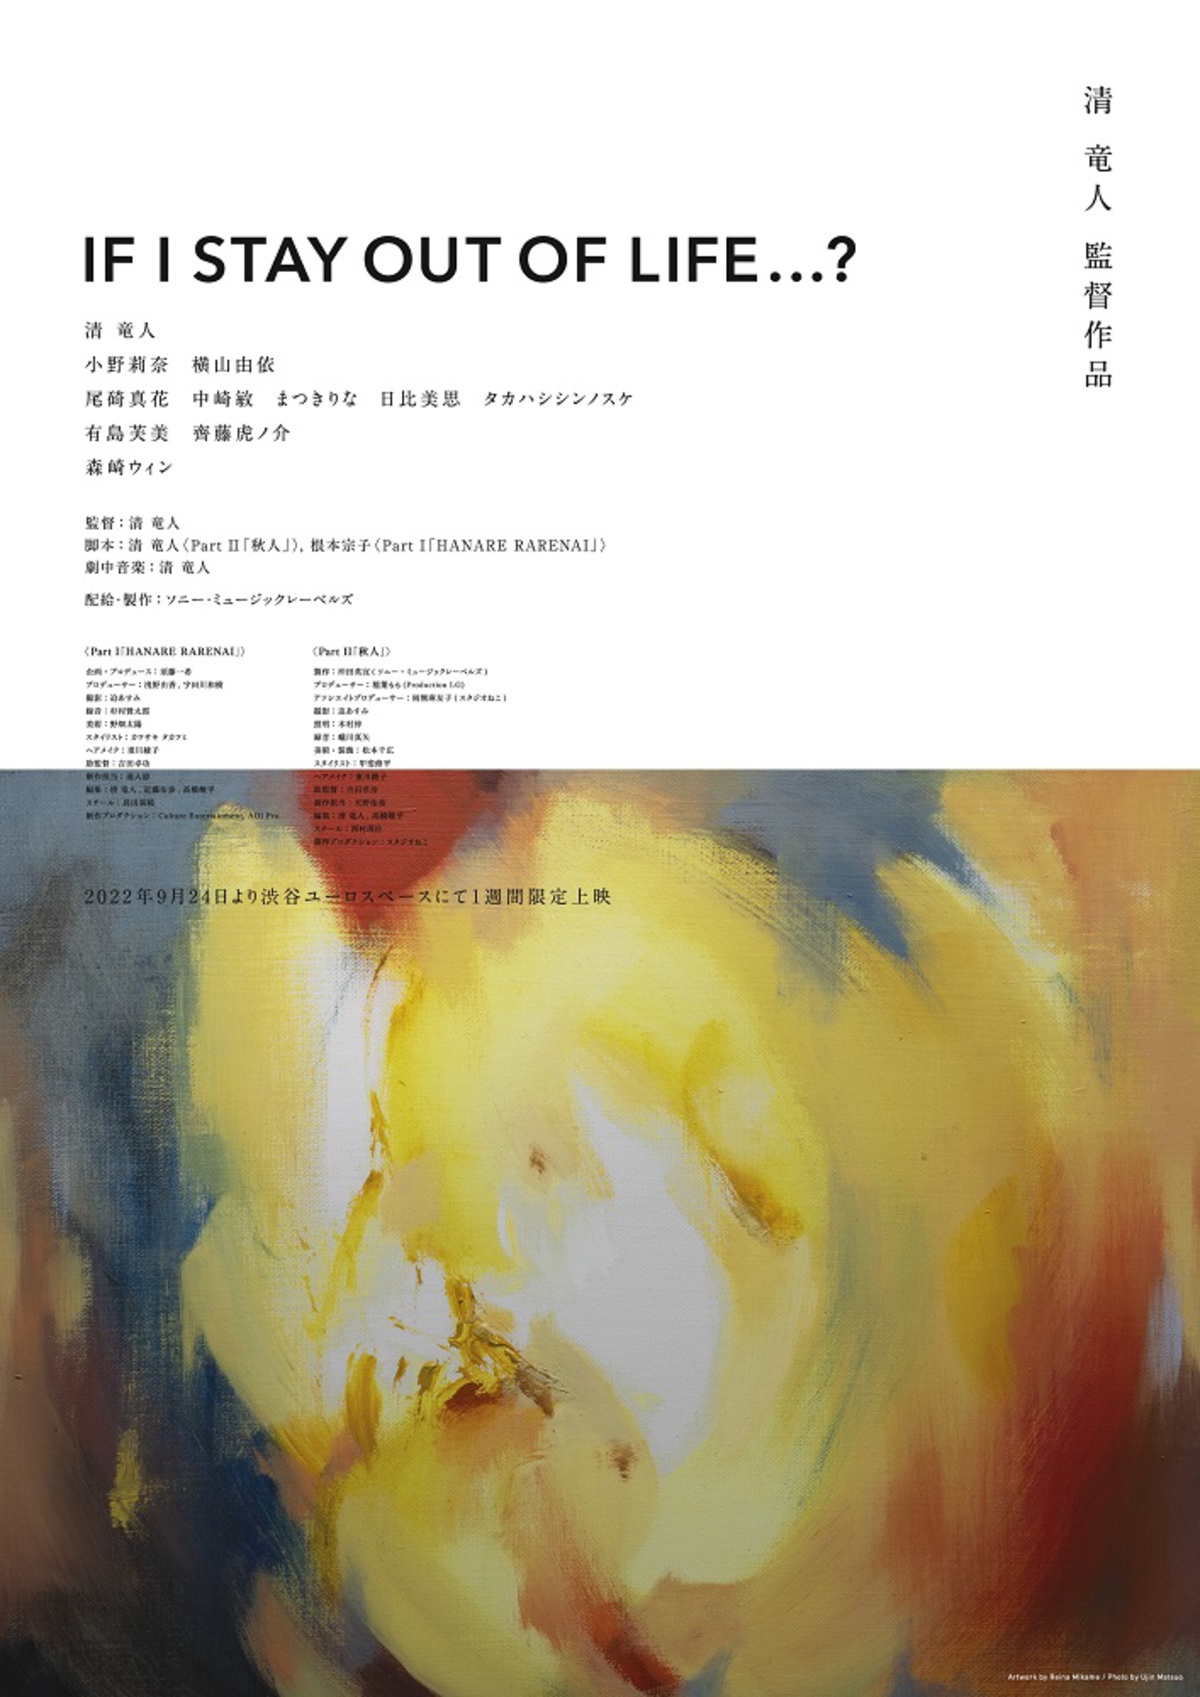 清 竜人 監督 主演 脚本 音楽務めた映画 If I Stay Out Of Life 9 24より渋谷ユーロスペースにて1週間限定上映決定